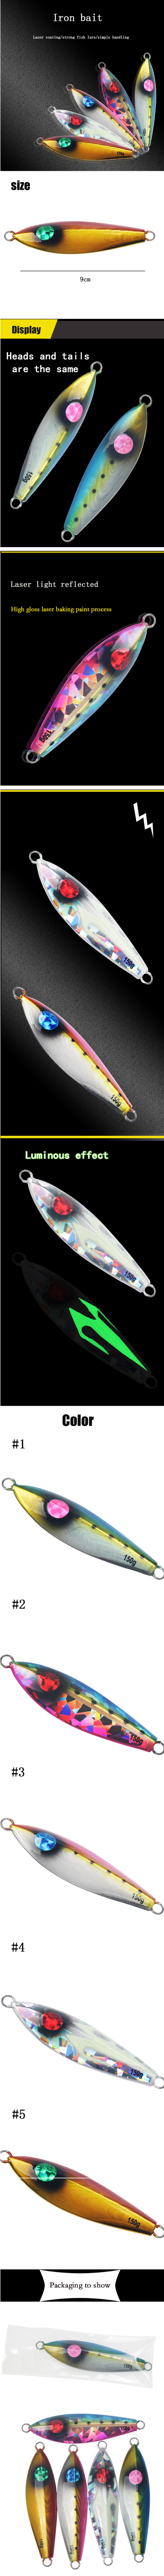 ZANLUREreg-1PC-9cm-150g-Luminous-Fishing-Hard-Iron-Bait-With-Laser-Coating-Strong-Fishing-Lure-1625302-1